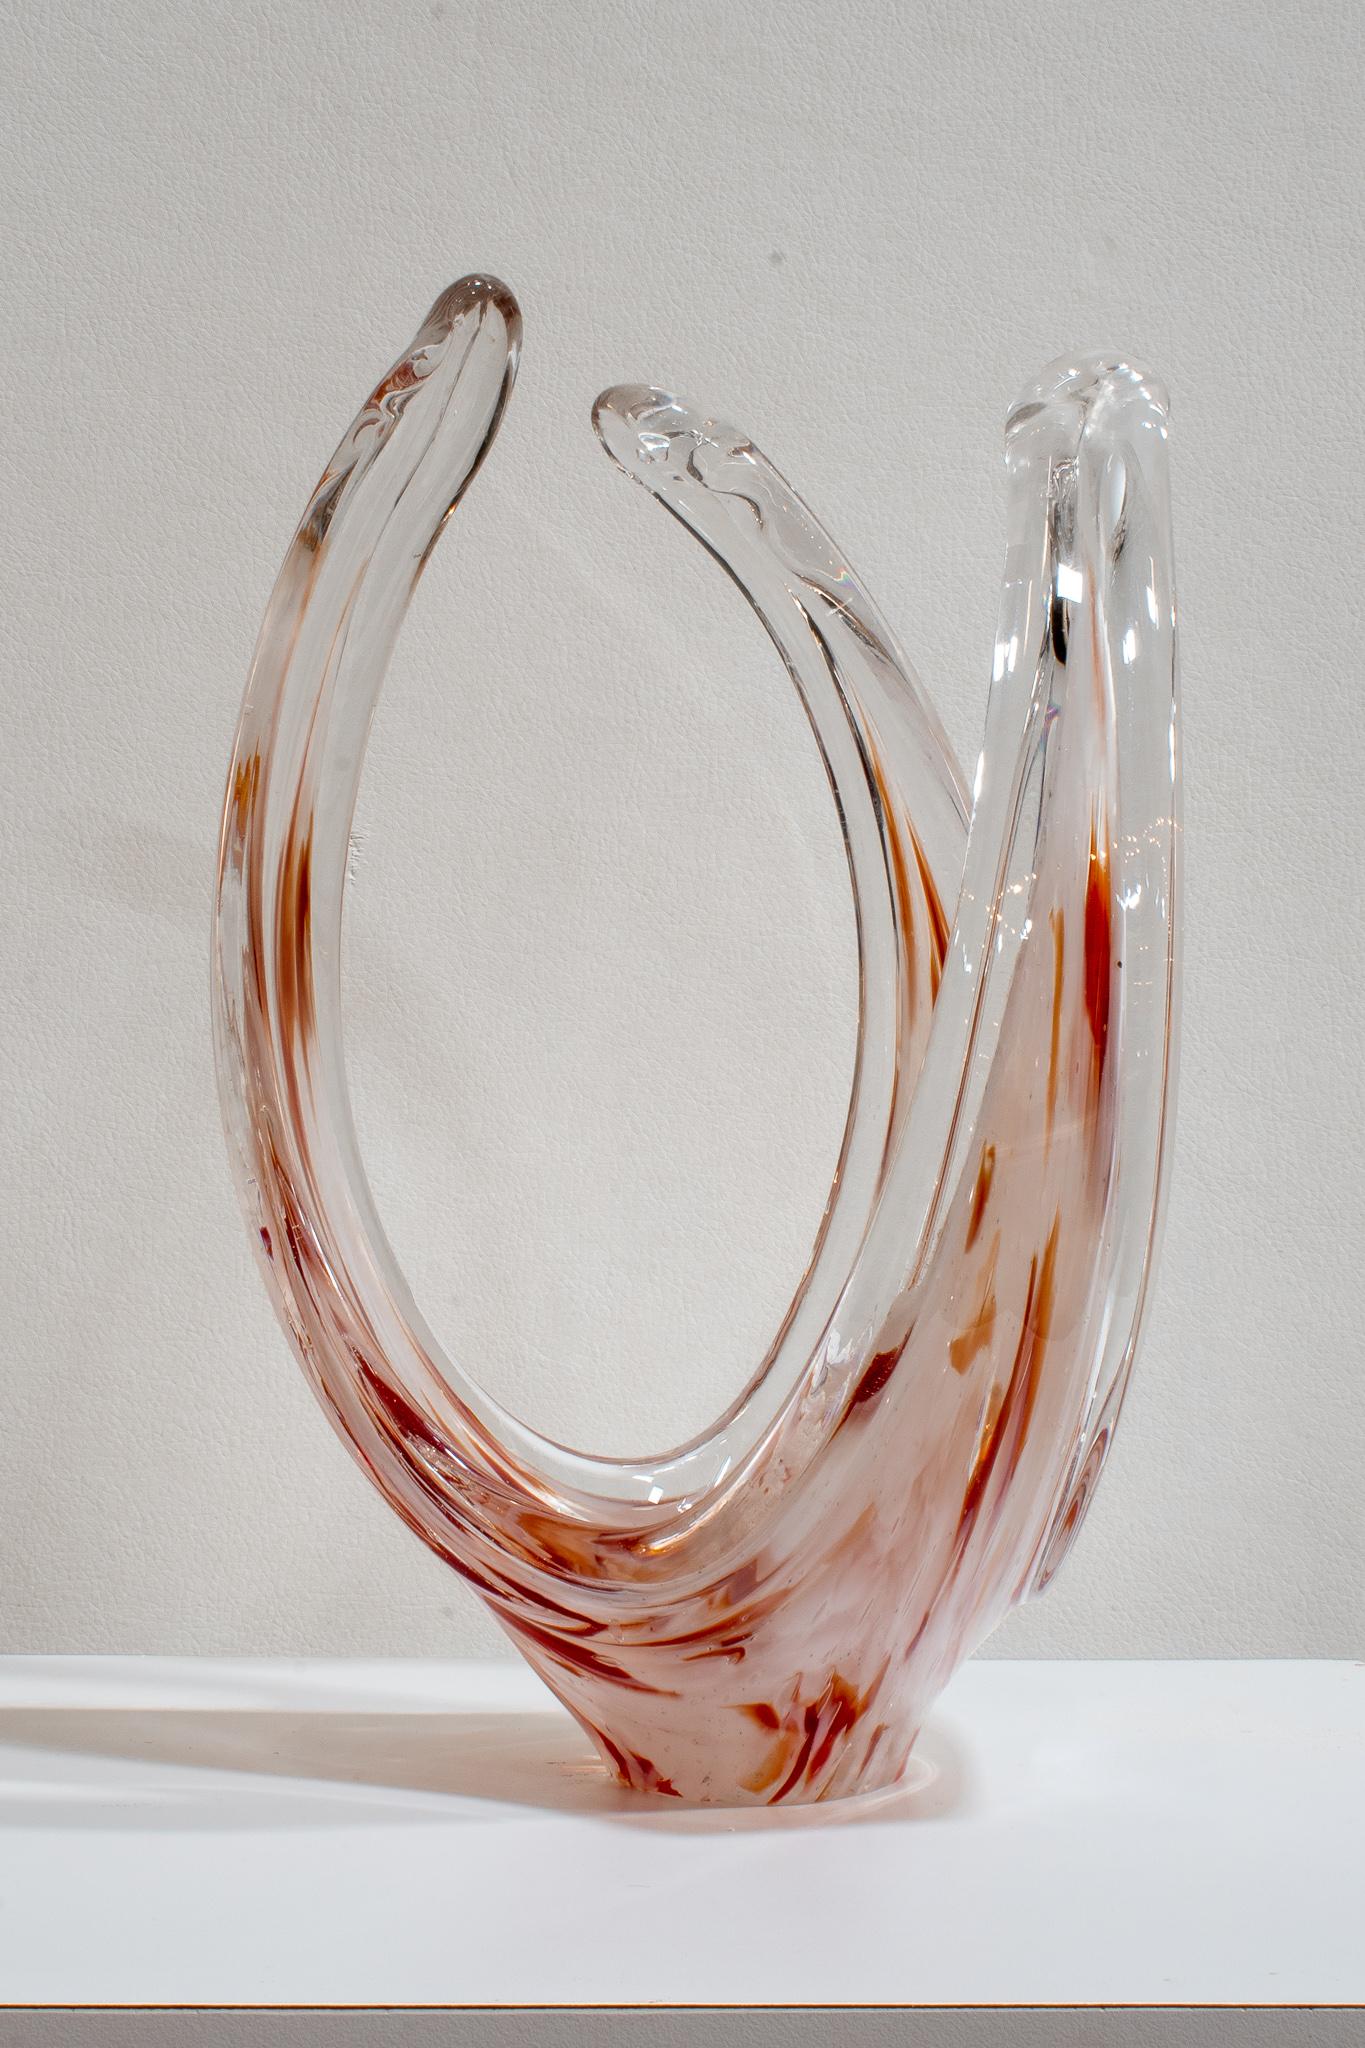 Vase de forme libre avec une coupe peu profonde en cristal de plomb lourd. Accents rouges rouille profonds. Malheureusement, pas de signature sur la base.